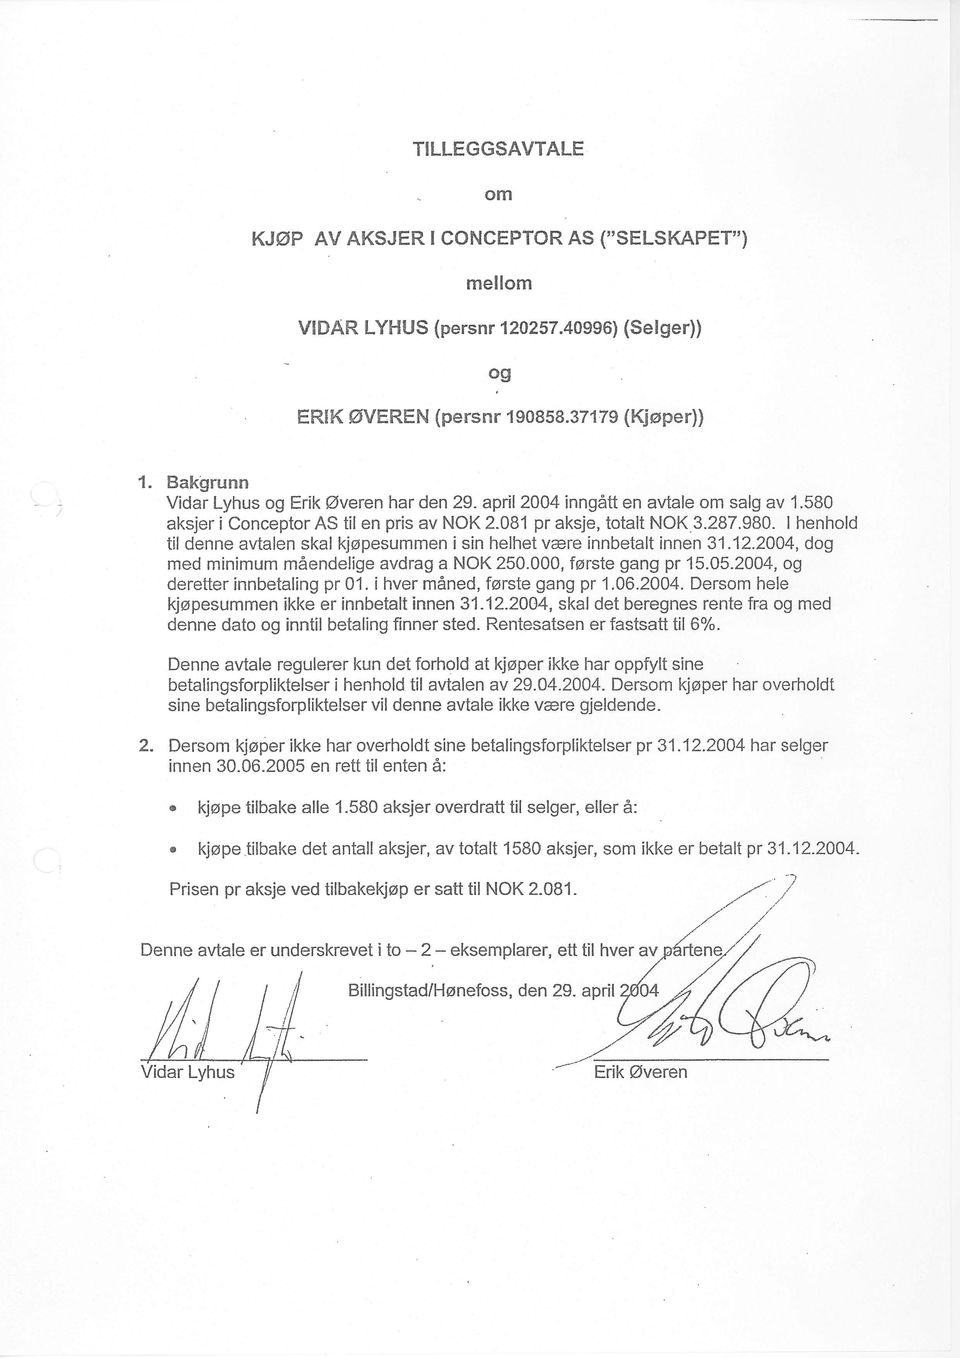 I henhold til denne avtalen skal kjopesummen i sin helhet vare innbetalt innen 31.12.2004, d med minimum mdendelige avdrag a NOK 250.000, ferste gang pr 15.05.2004, deretter innbetaling pr 01.